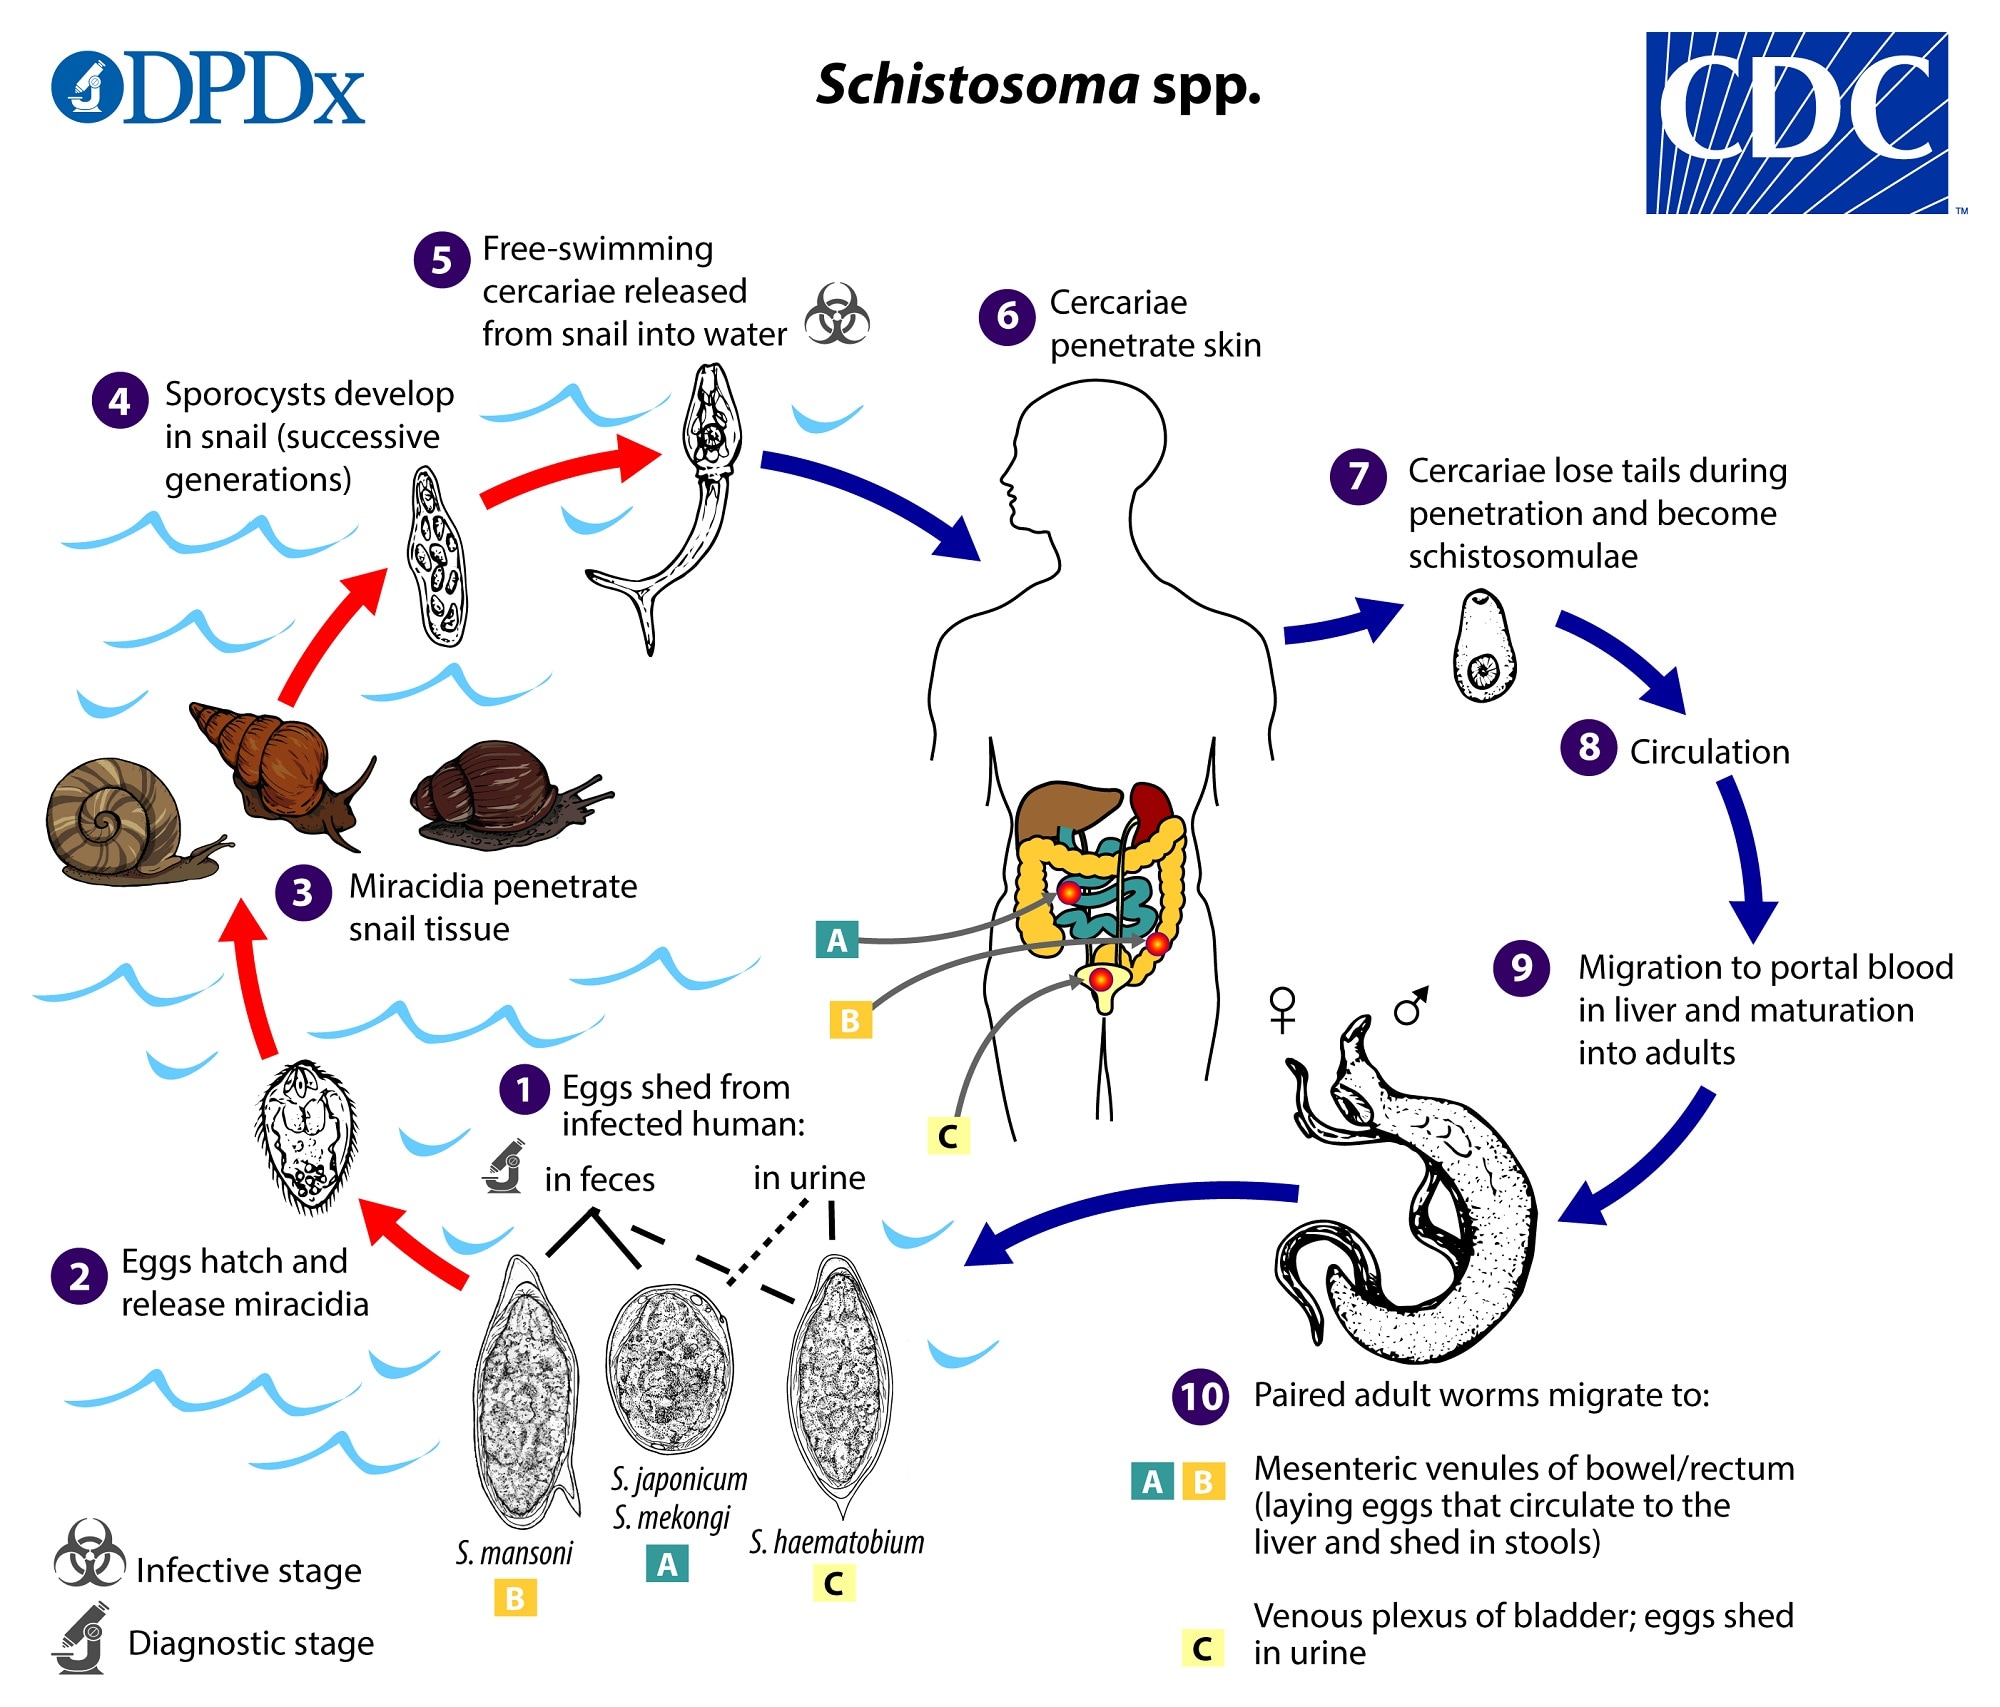 Schistosomiasis katayama láz - Az egyiptomi férfimenstruáció mögötti lúdbőröztető valóság - Rakéta